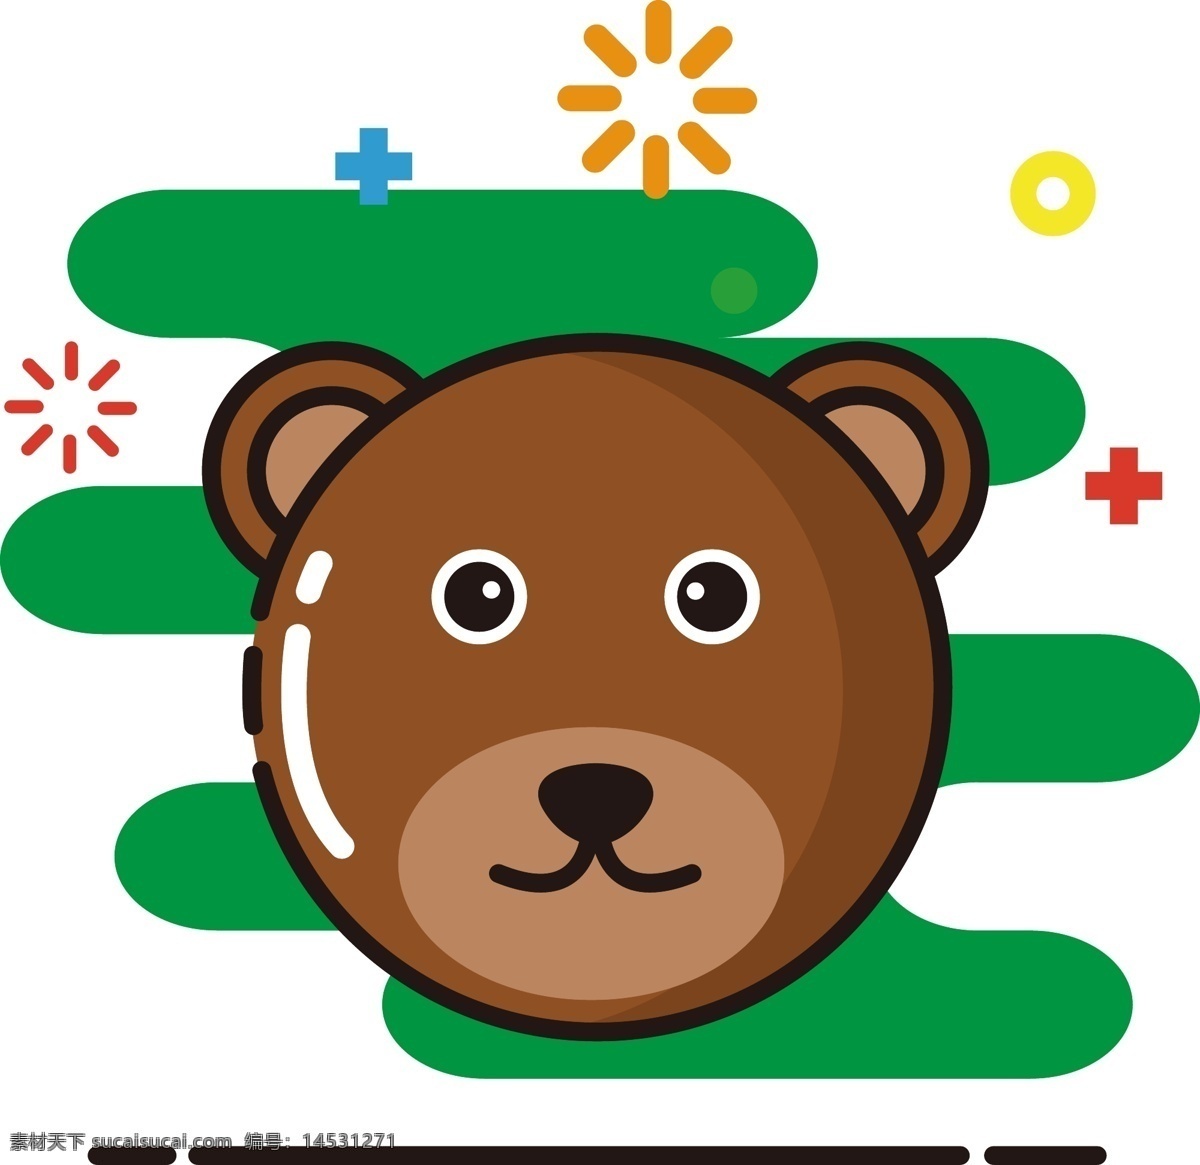 棕熊 mbe 图标 圆形 矢量 卡通 动物 商用 元素 可商用